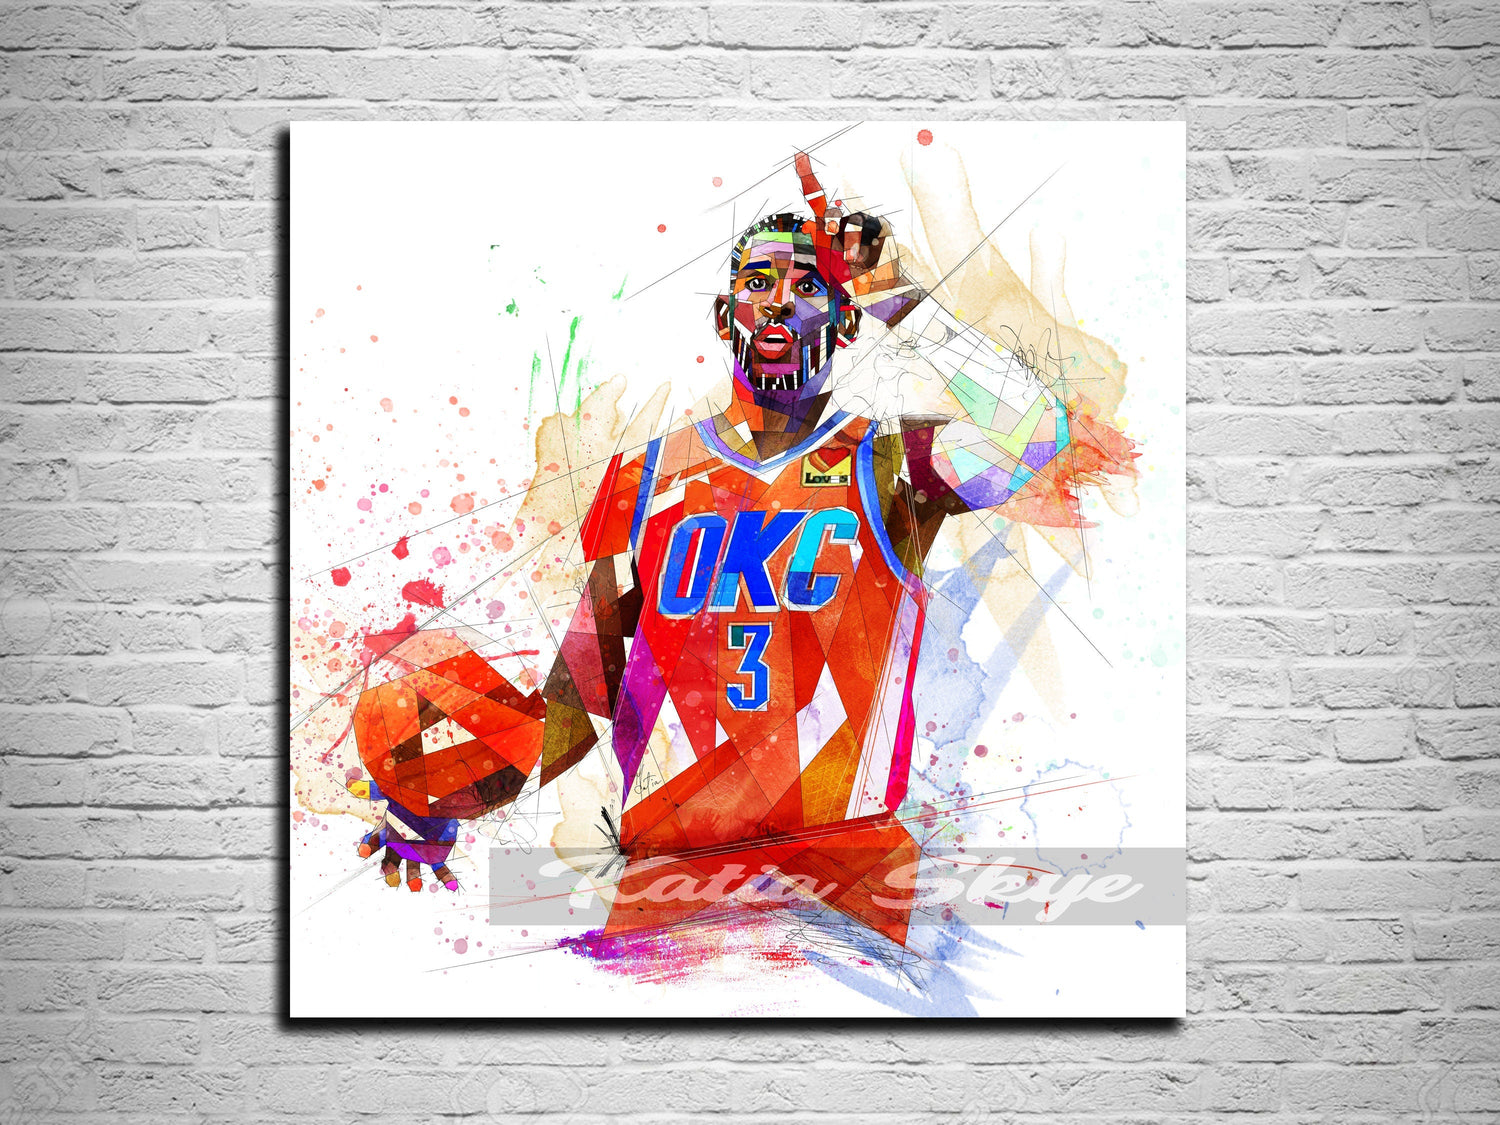 Nba basketball art, Basketball artwork, Basketball drawings